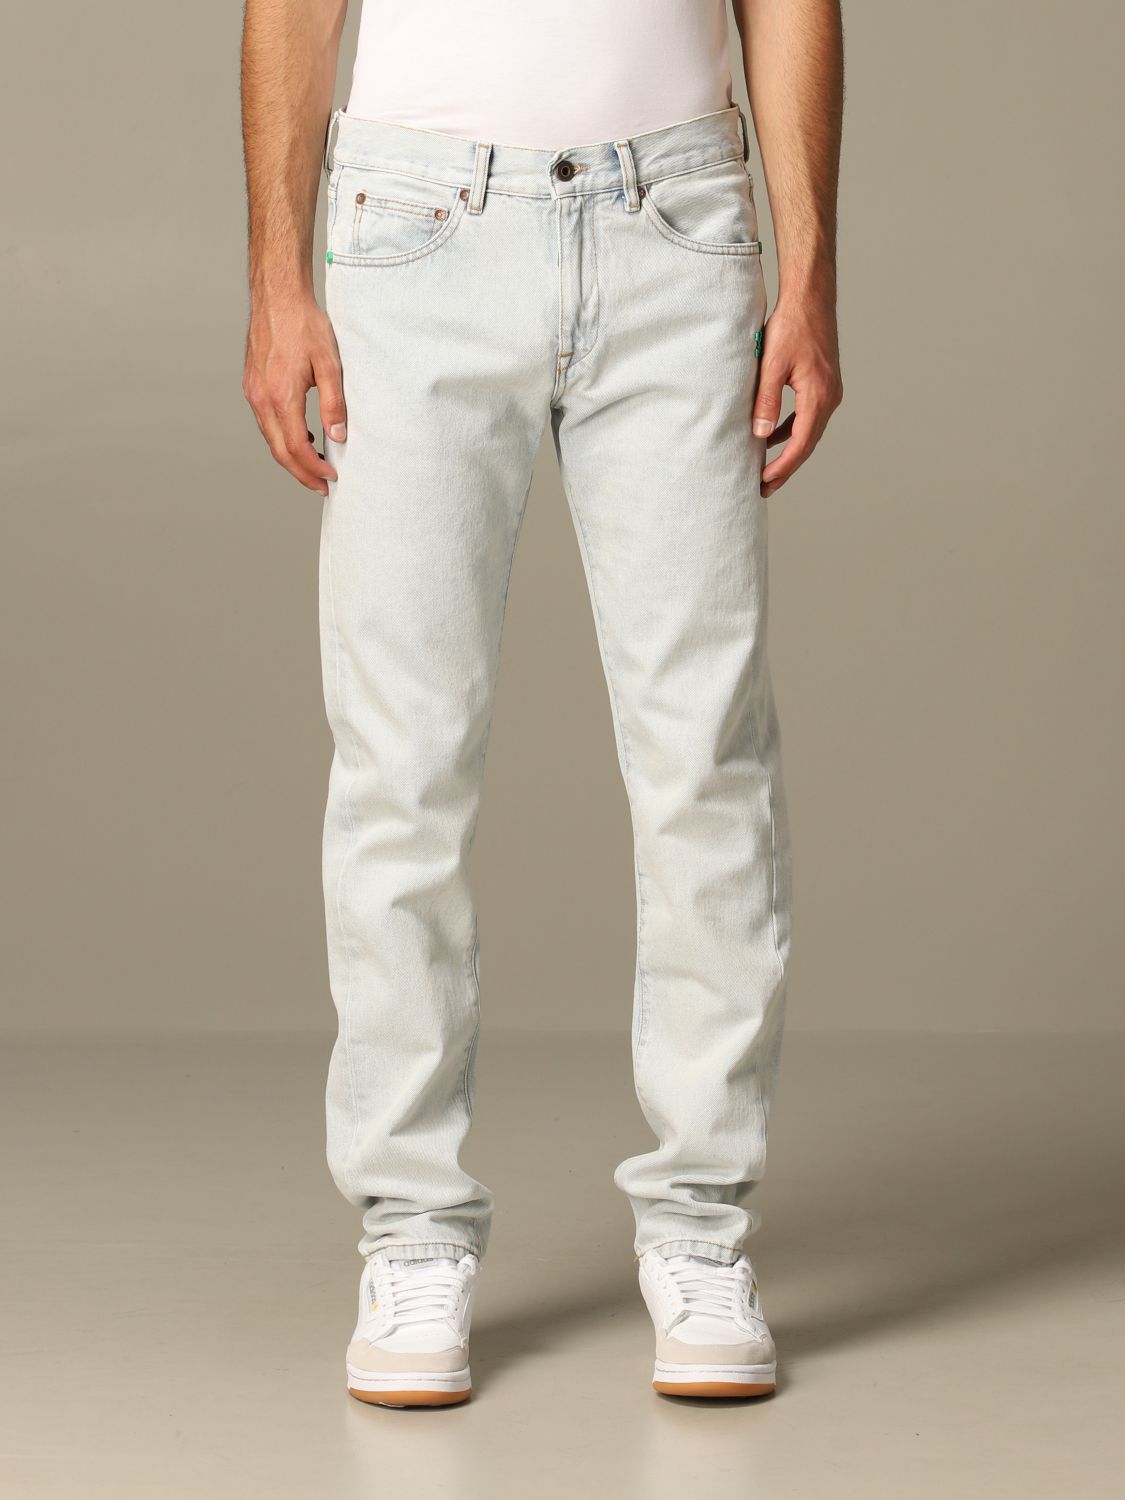 white blue jeans mens